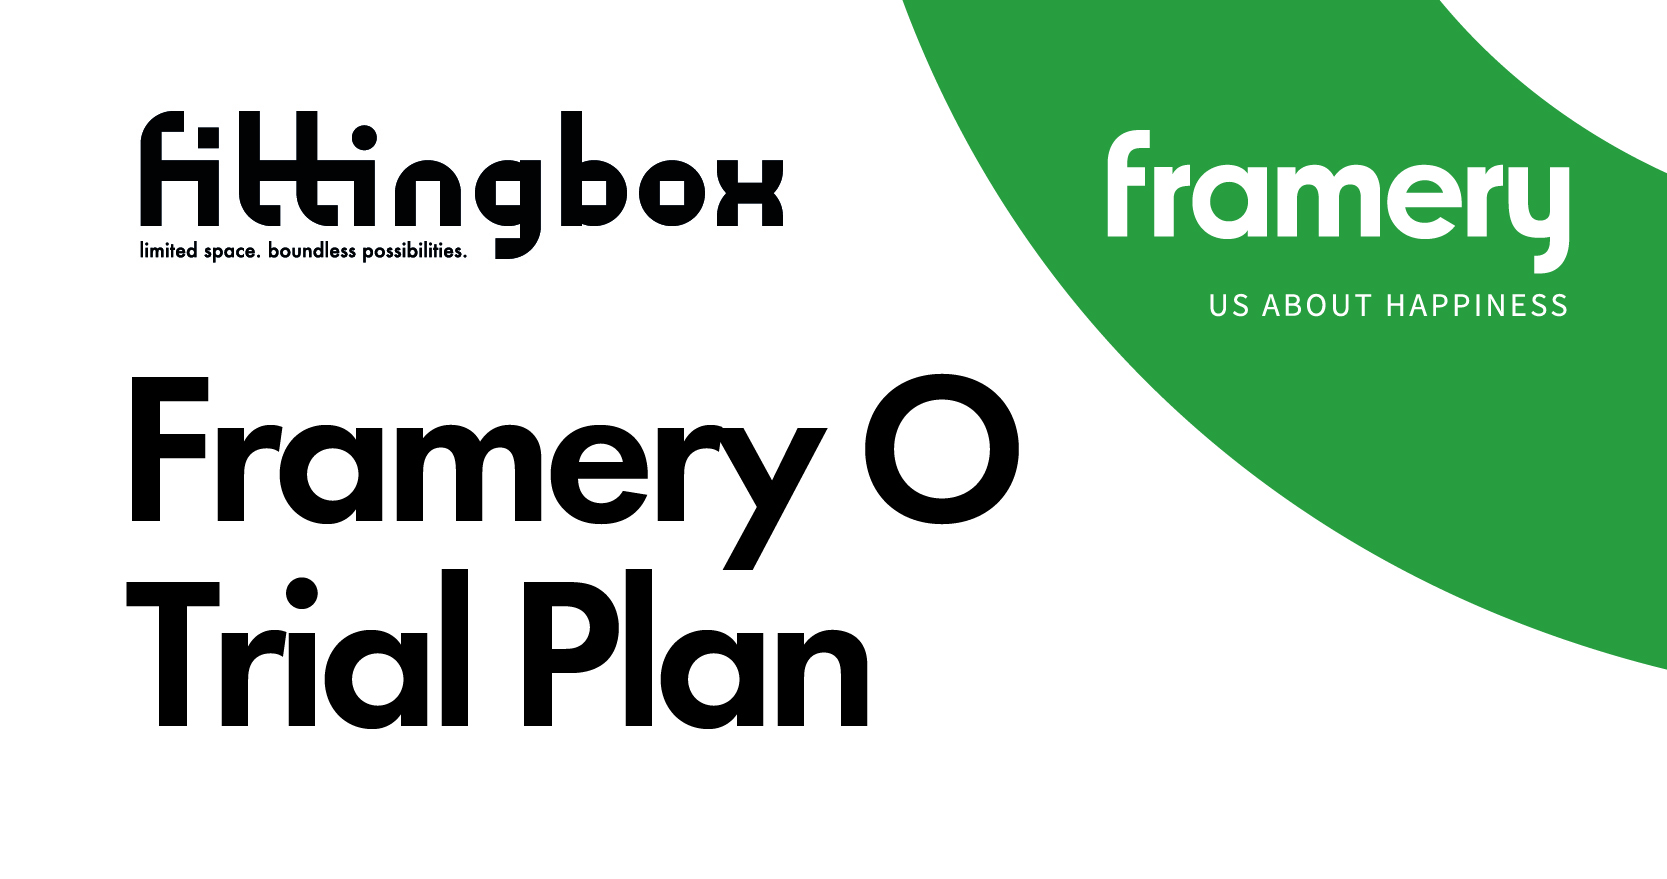 Framery O Trial Plan スタート